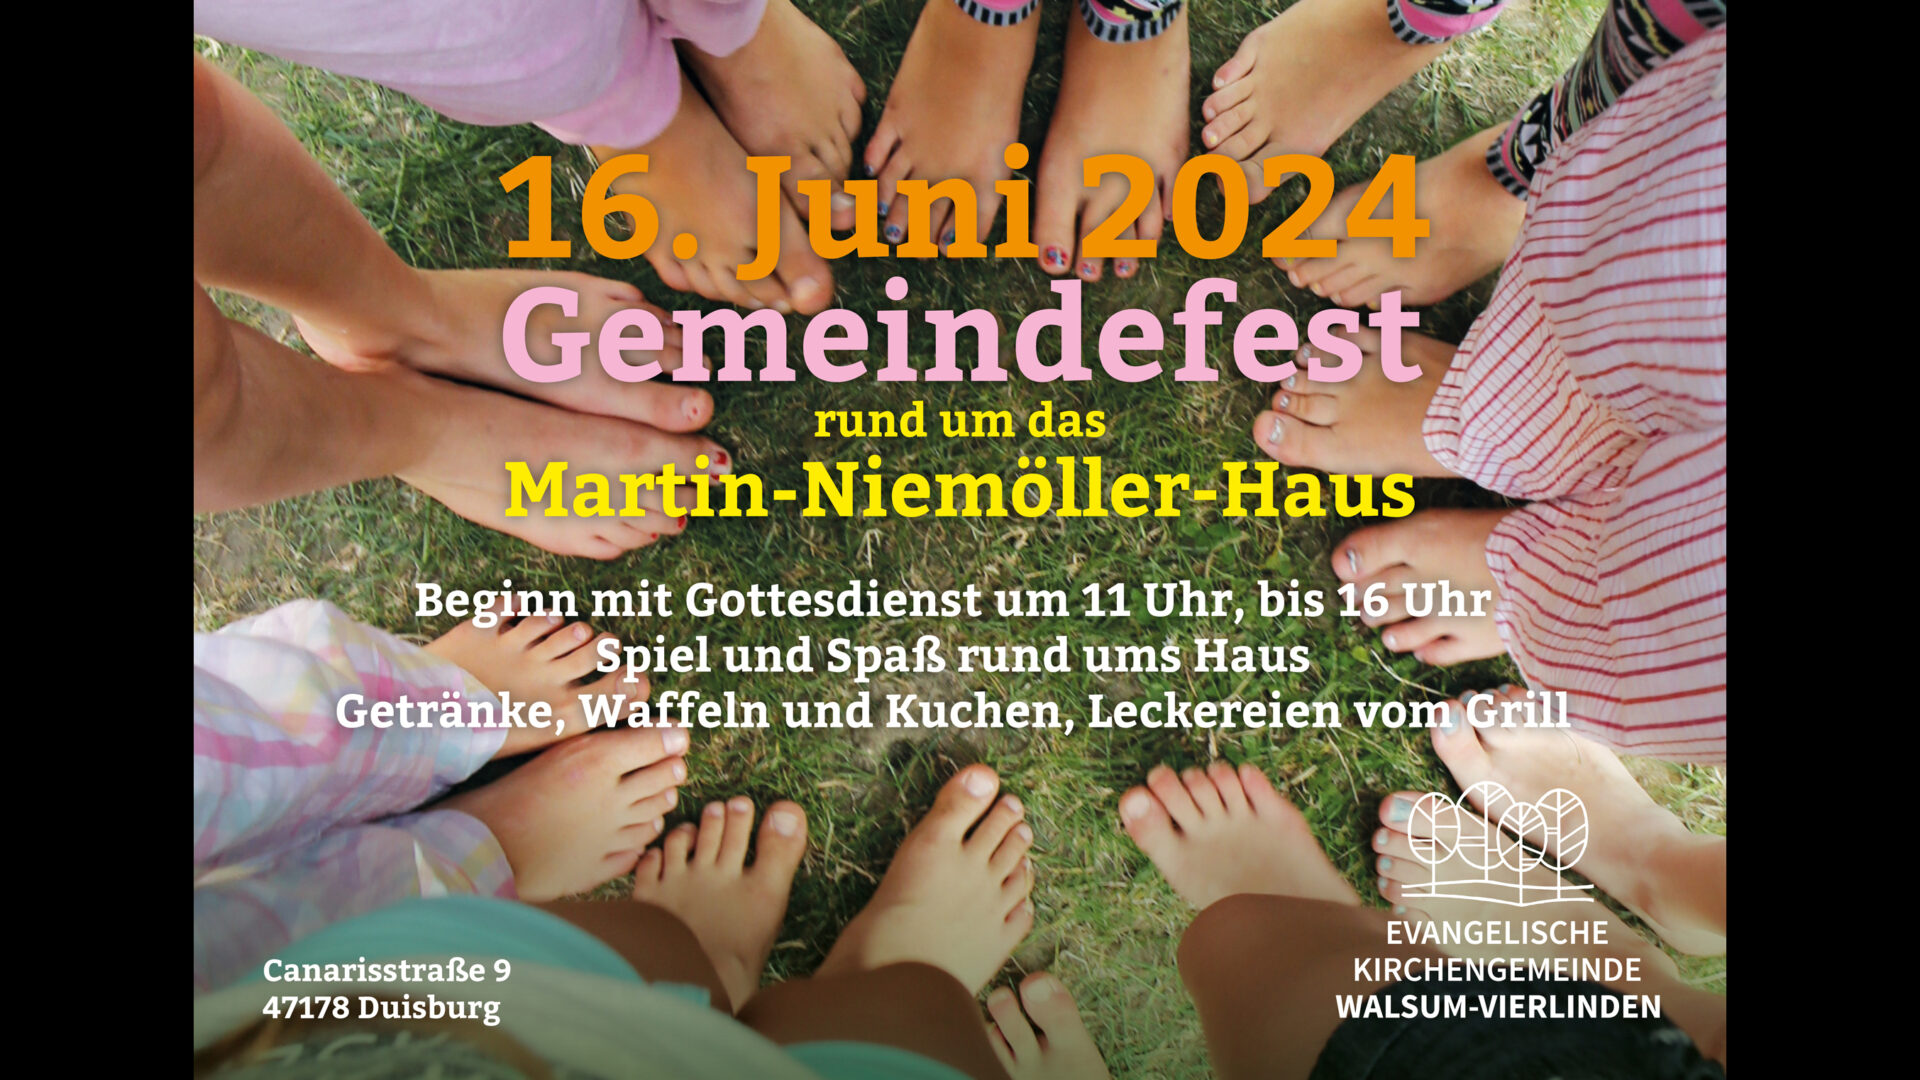 16. Juni 2024, Gemeindefest run dum das Martin-Niemöller-Haus